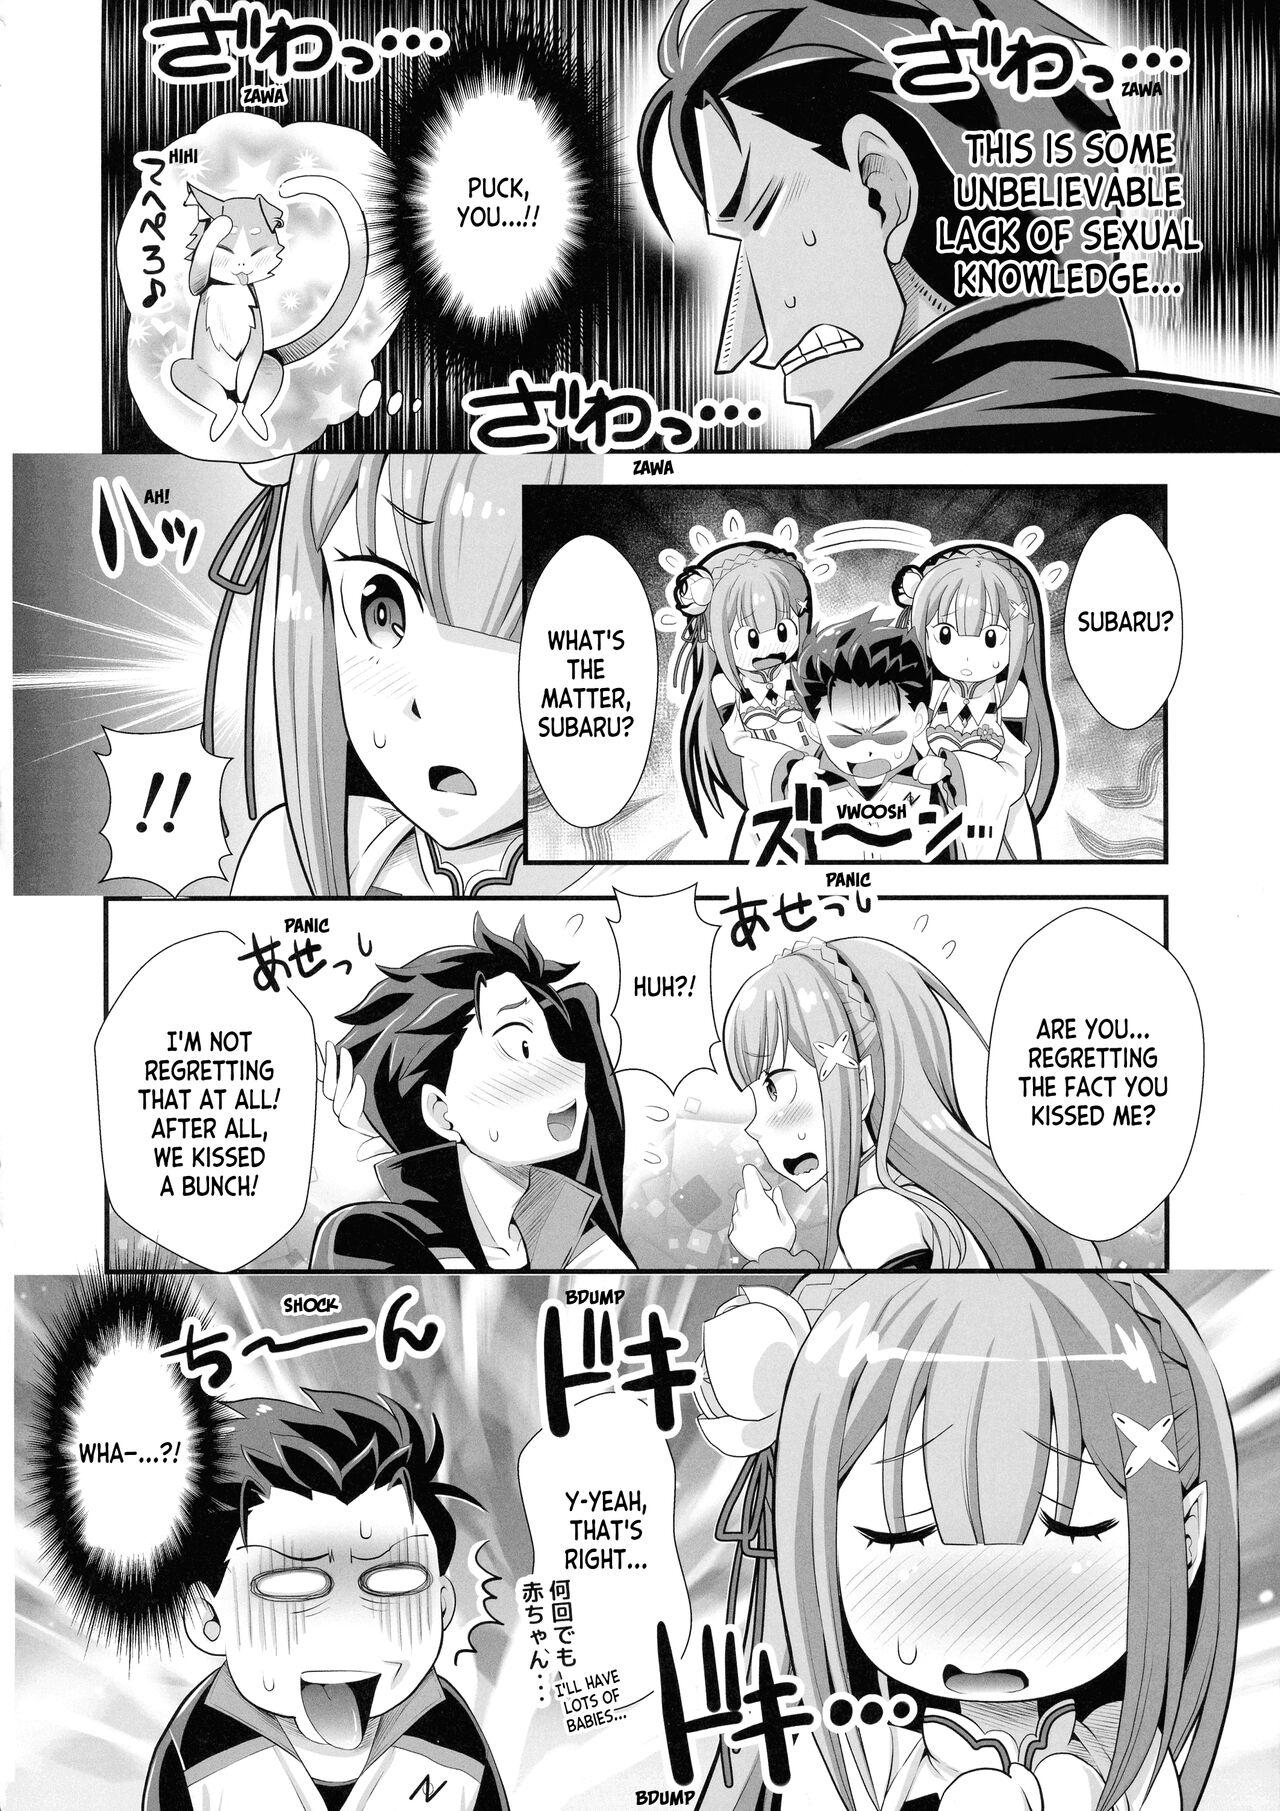 Cumming Re: Zero na Maid-san vol. 3 - Re zero kara hajimeru isekai seikatsu Ecchi - Page 4